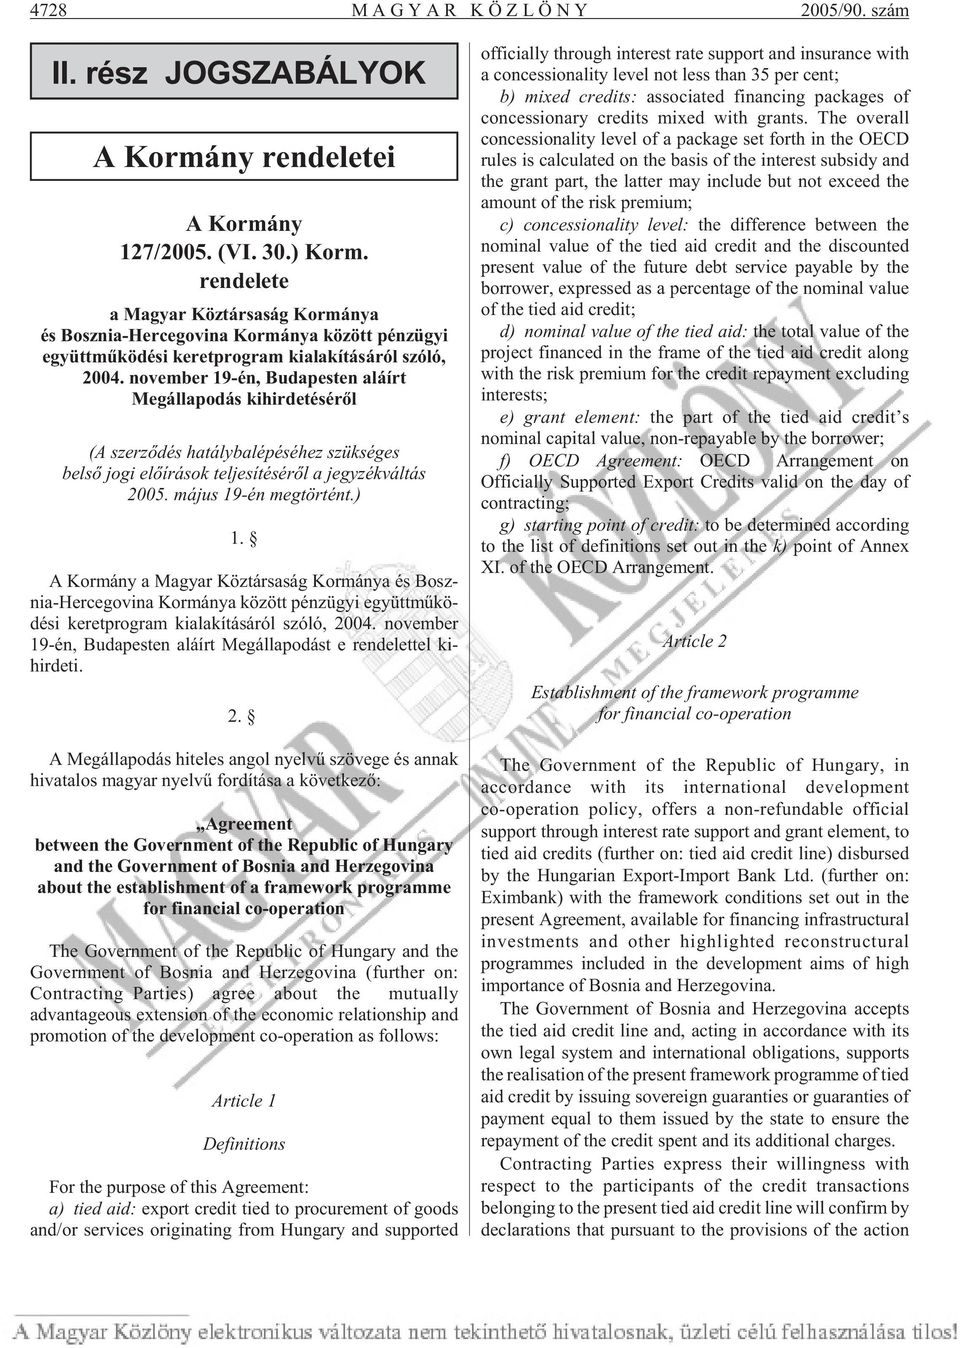 november 19-én, Budapesten aláírt Megállapodás kihirdetésérõl (A szerzõdés hatálybalépéséhez szükséges belsõ jogi elõ írások teljesítésérõl a jegyzékváltás 2005. május 19-én megtörtént.) 1.